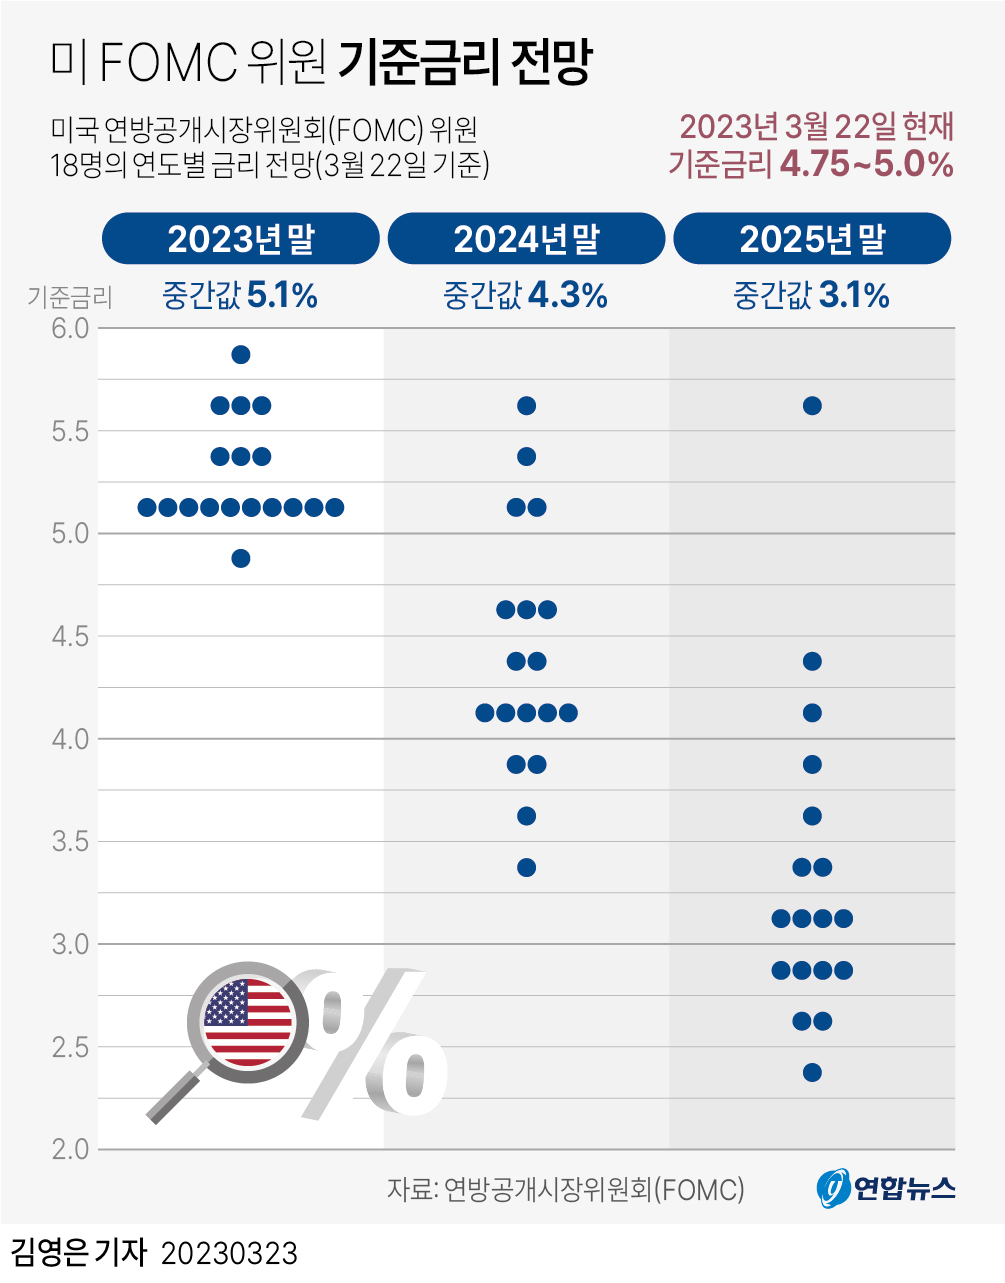 [그래픽] 미 FOMC 위원 기준금리 전망